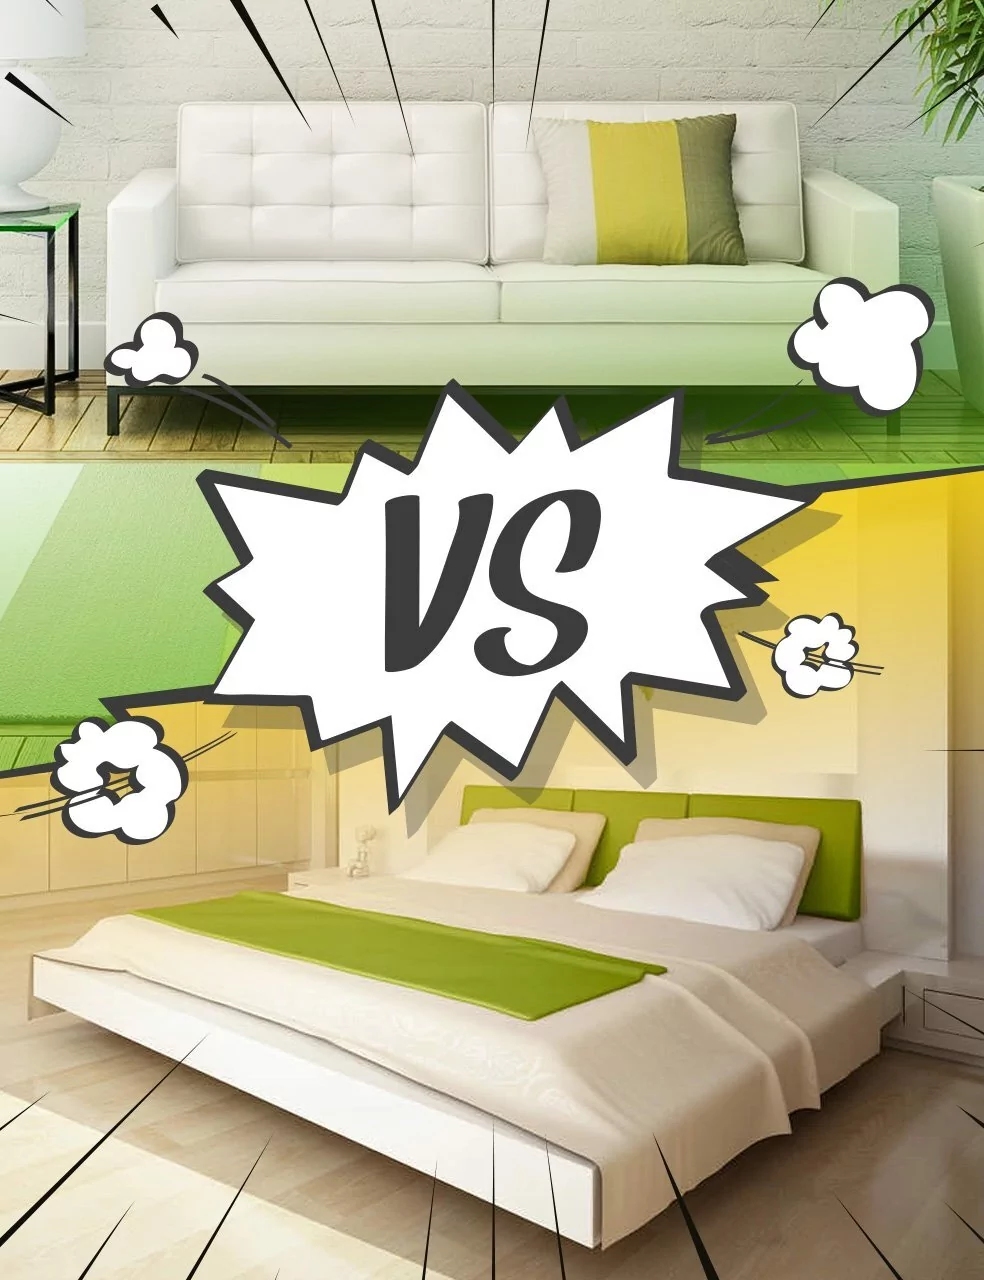 Деревянные двуспальные кровати – как сделать правильный выбор?